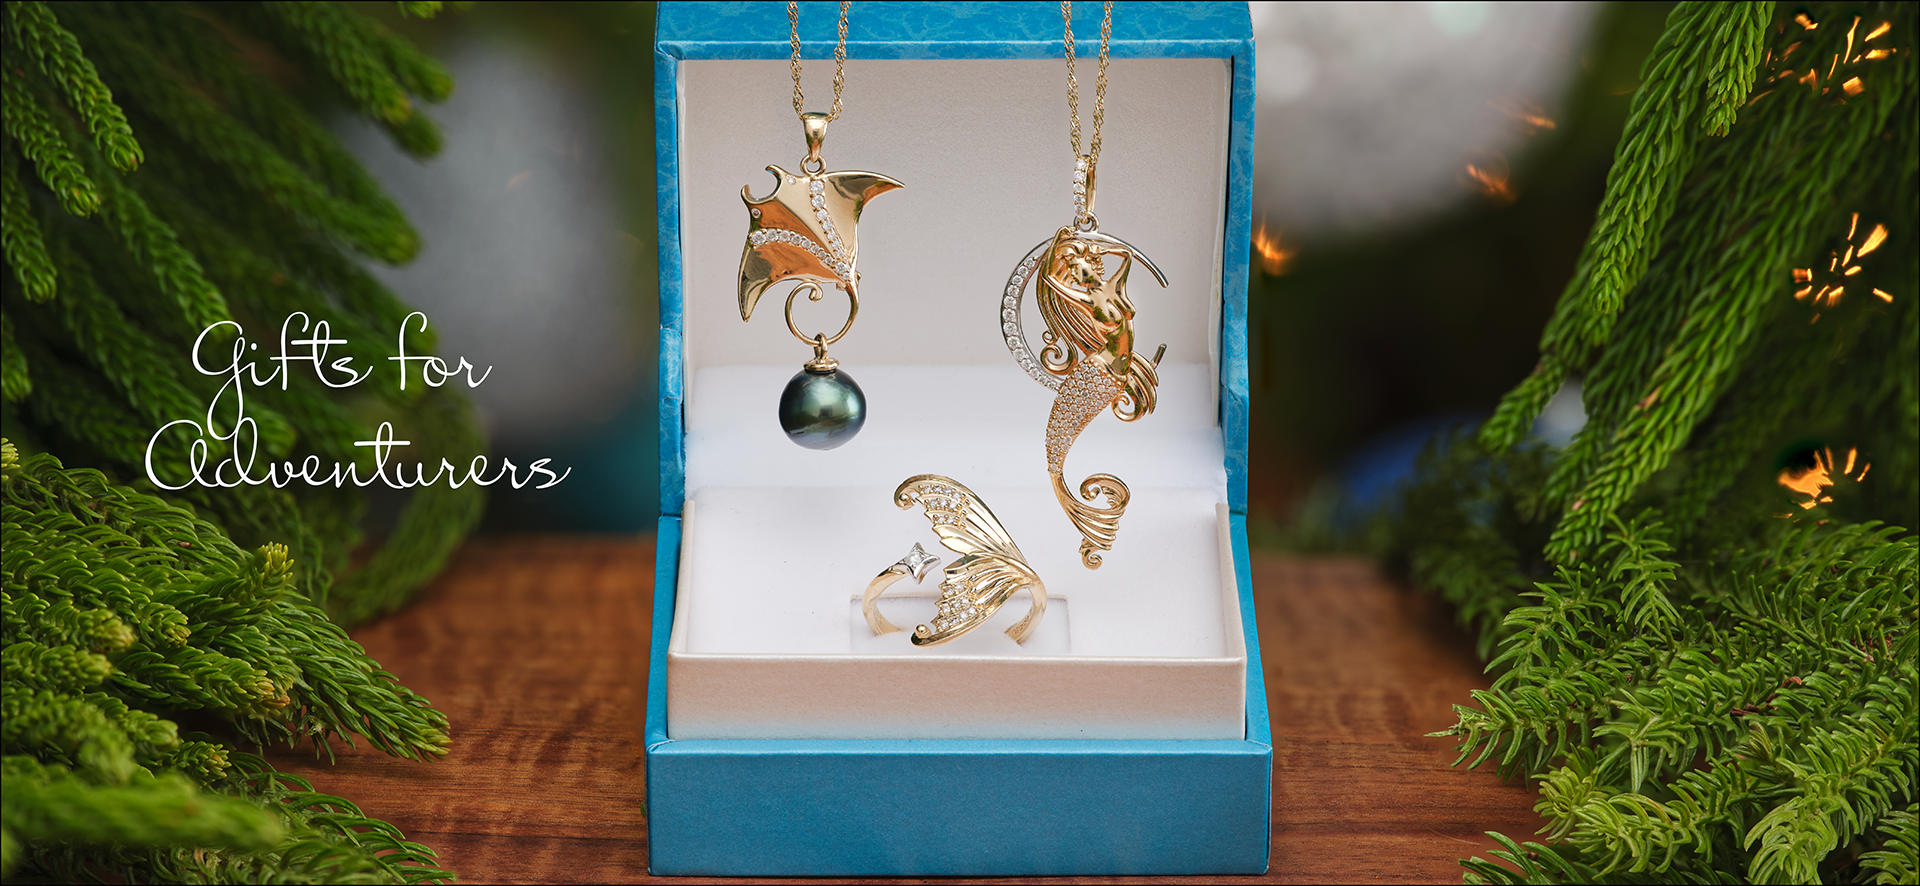 Shop Gifts for Ocean Lovers & Adventurers - Hawaiian Jewelry